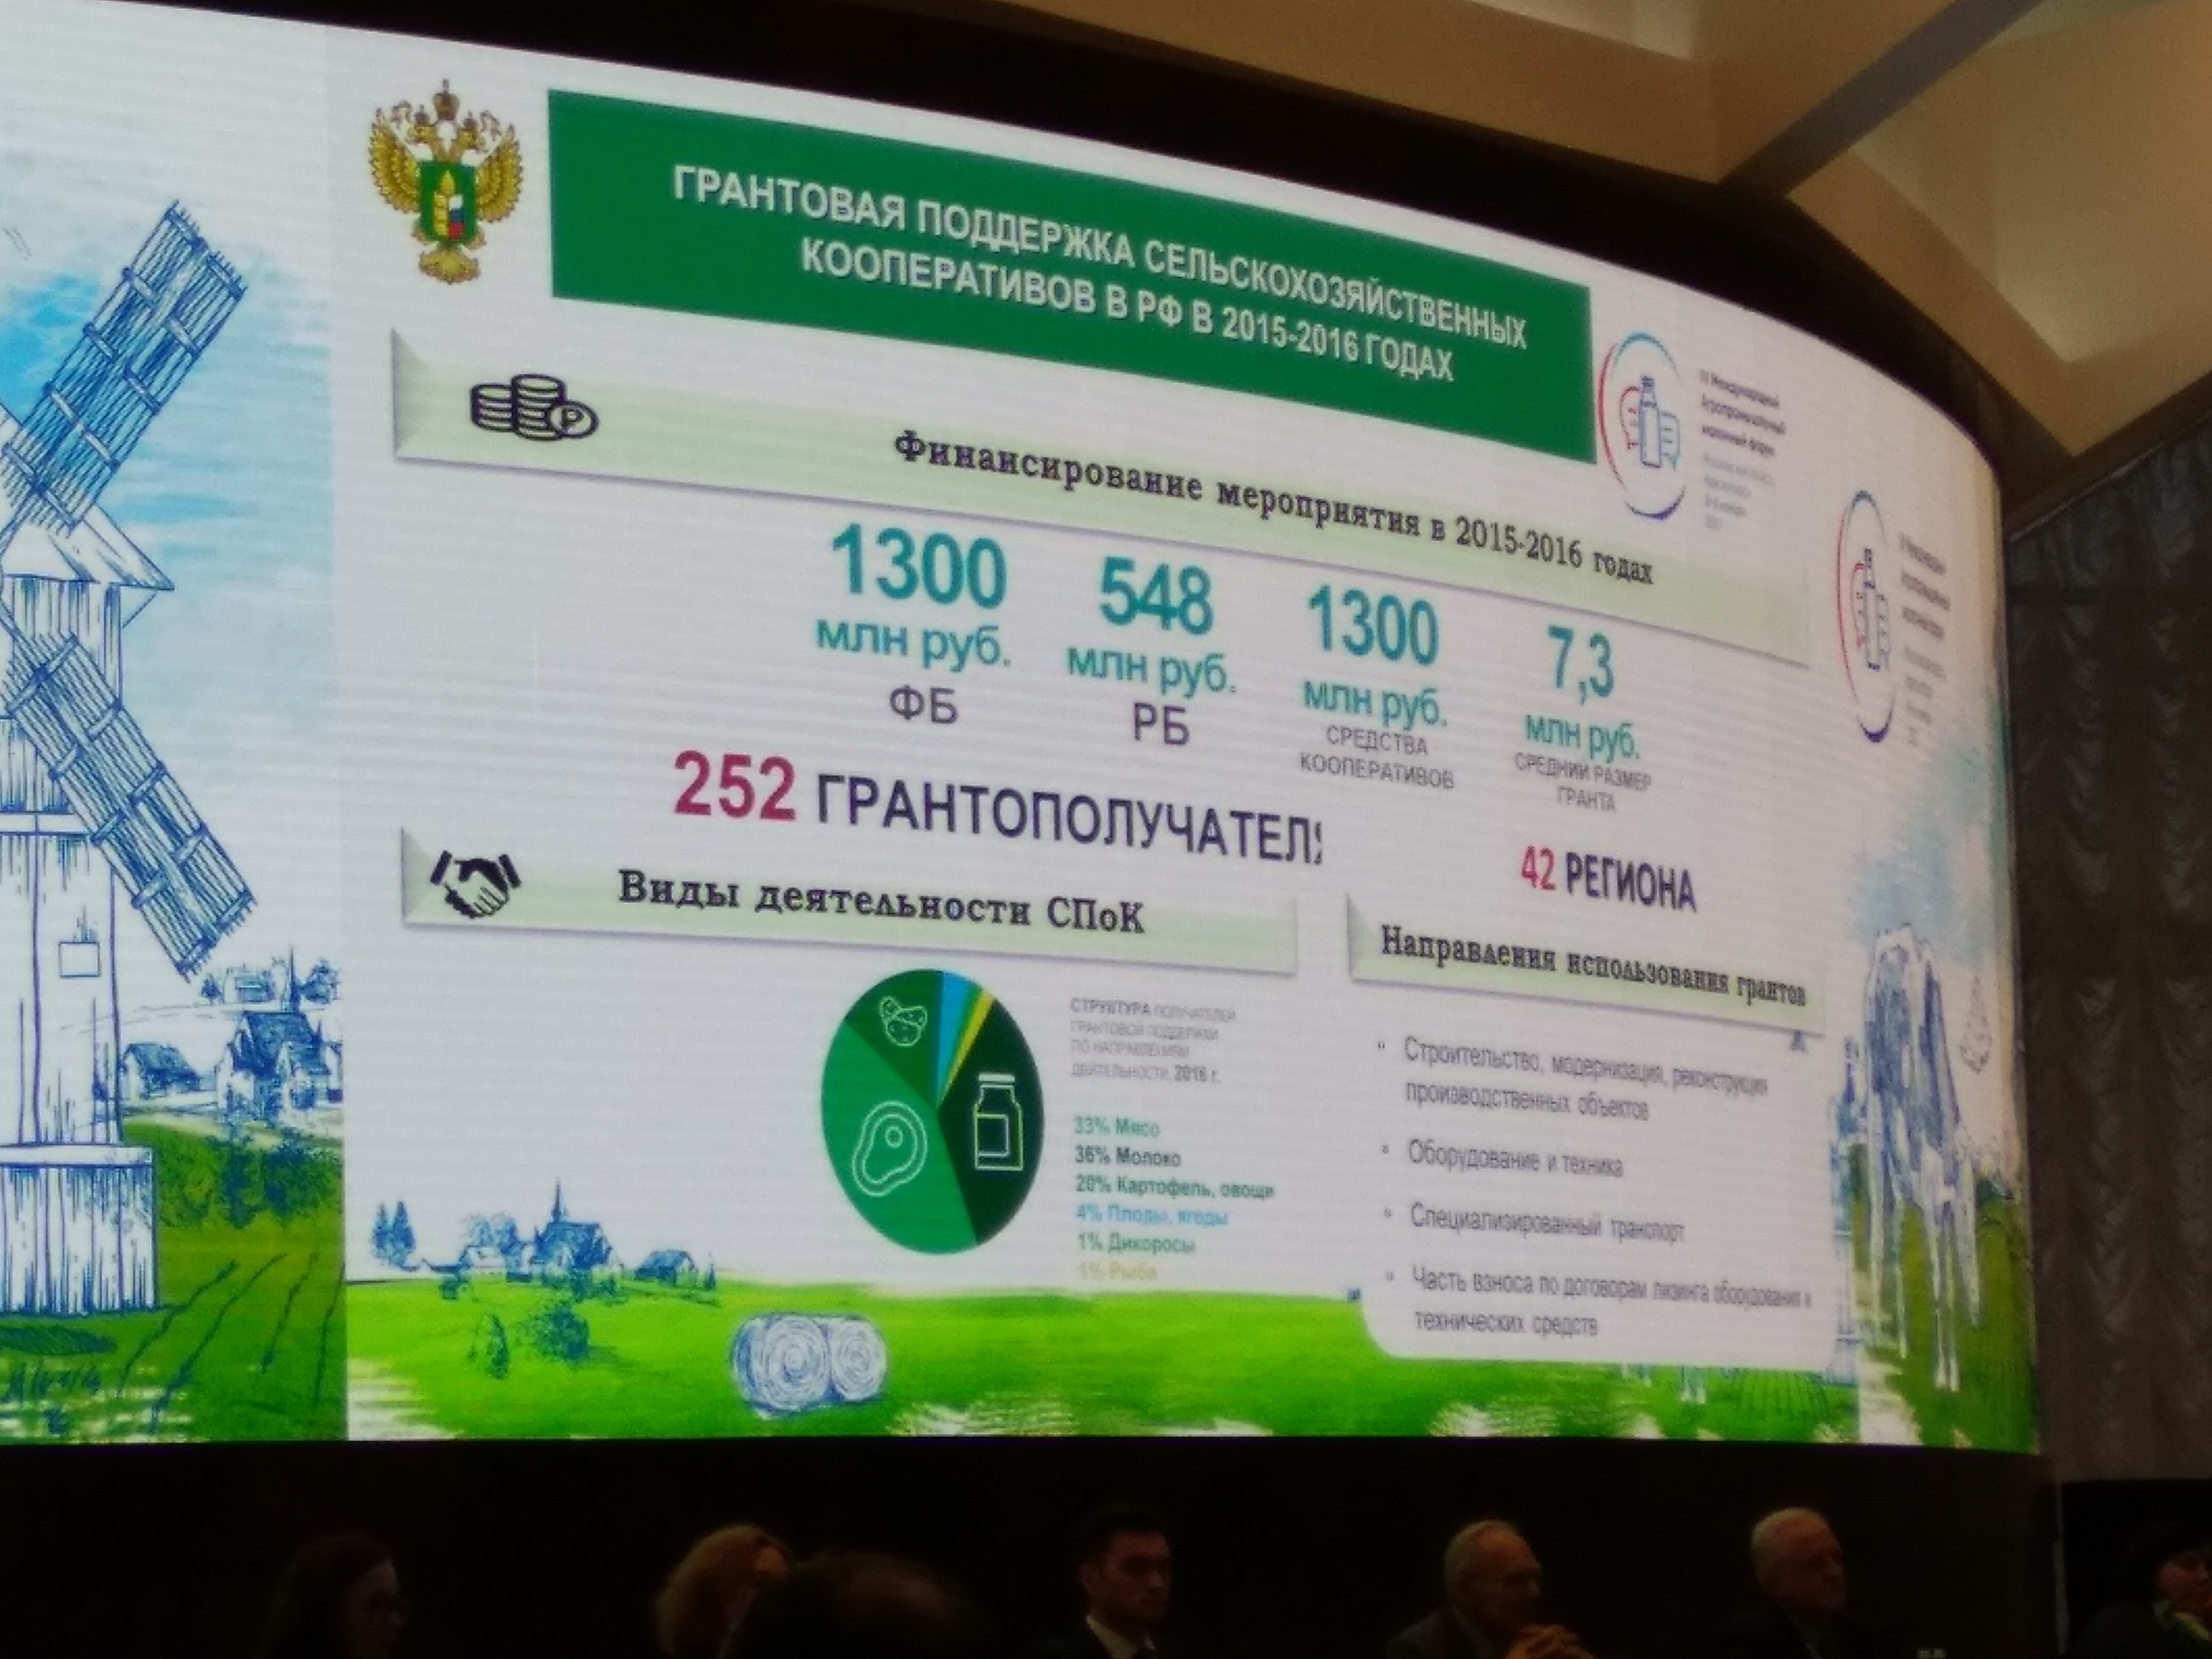 Грантовая поддержка сельскохозяйственных кооперативов в РФ